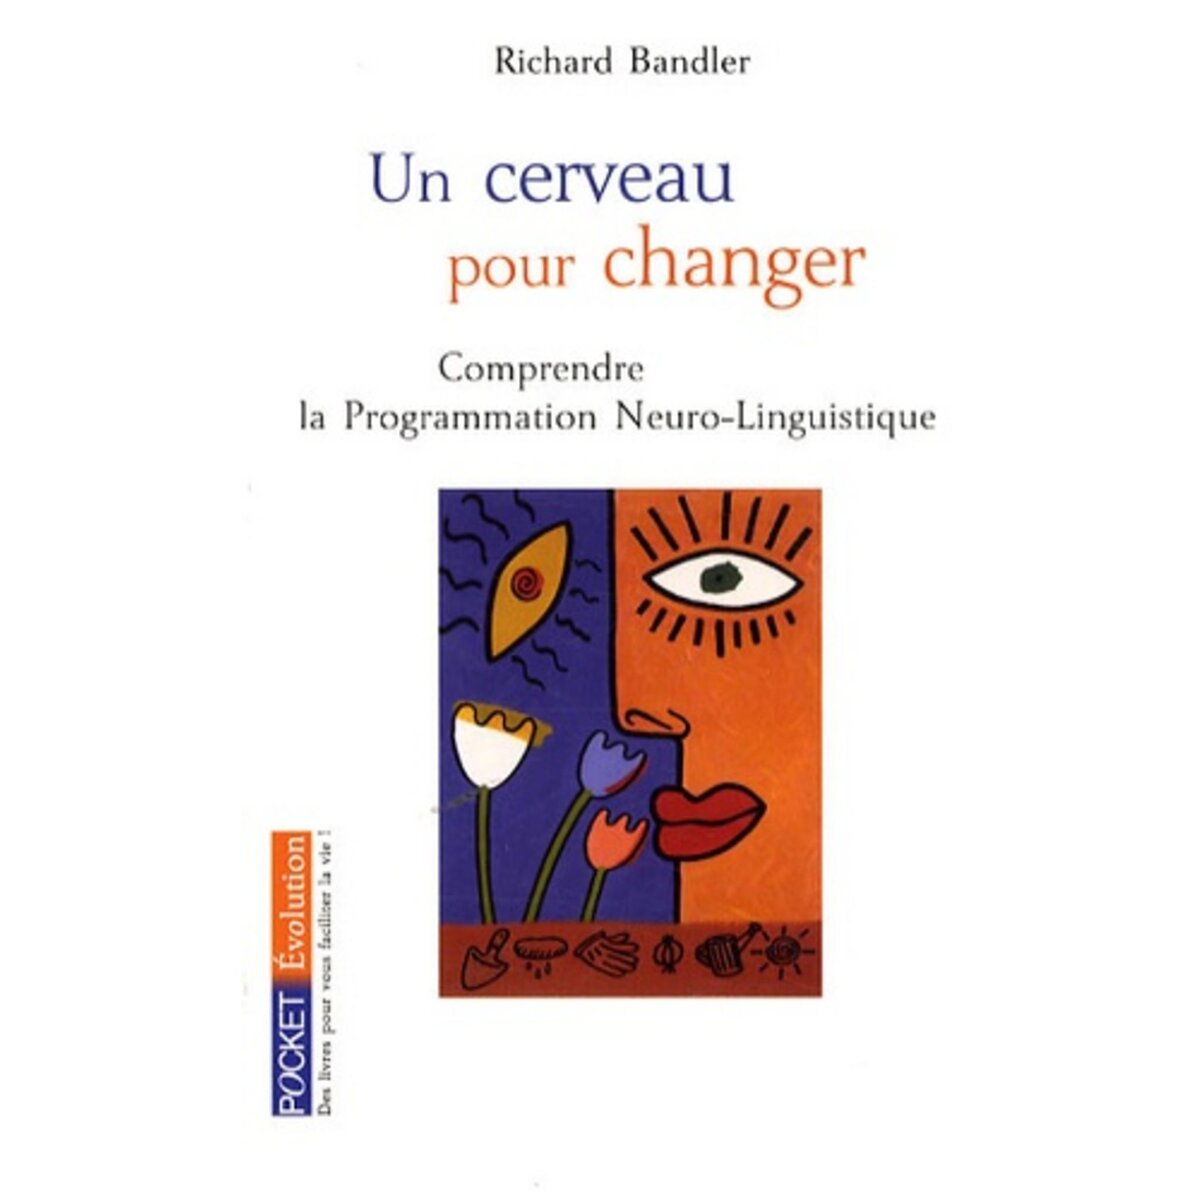  UN CERVEAU POUR CHANGER. LA PROGRAMMATION NEURO-LINGUISTIQUE, Bandler Richard